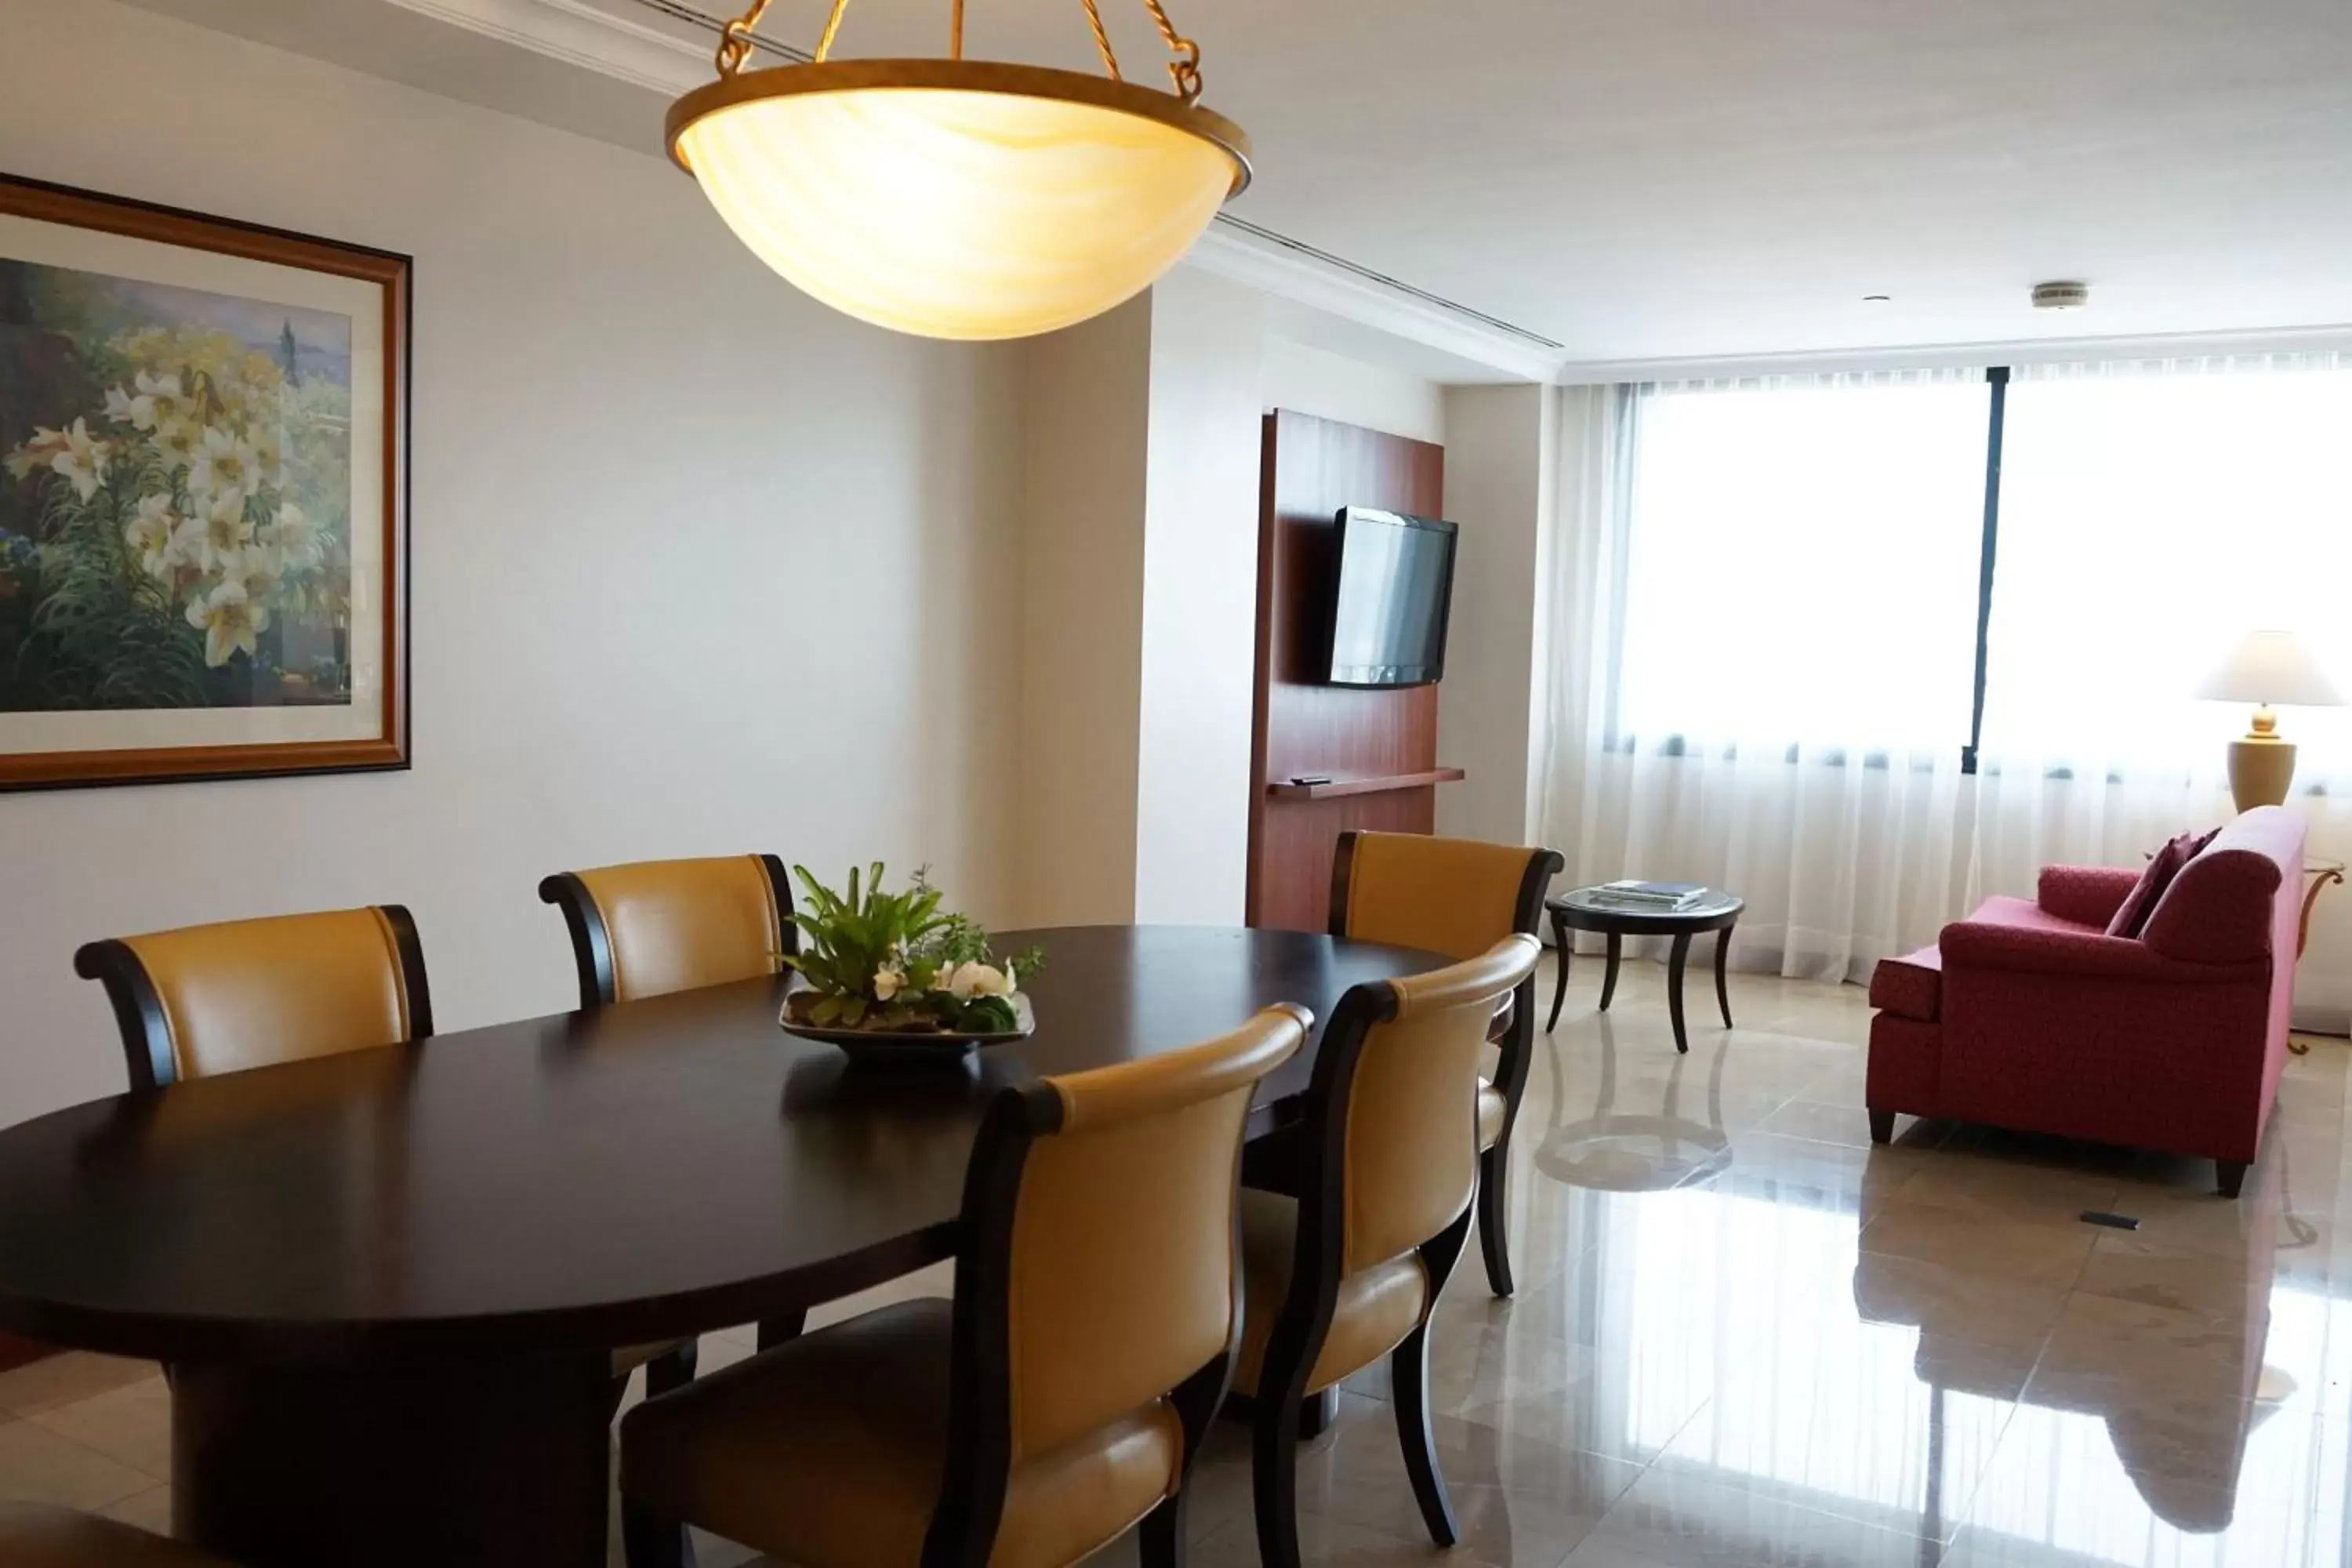 Bedroom, Dining Area in JW Marriott Caracas